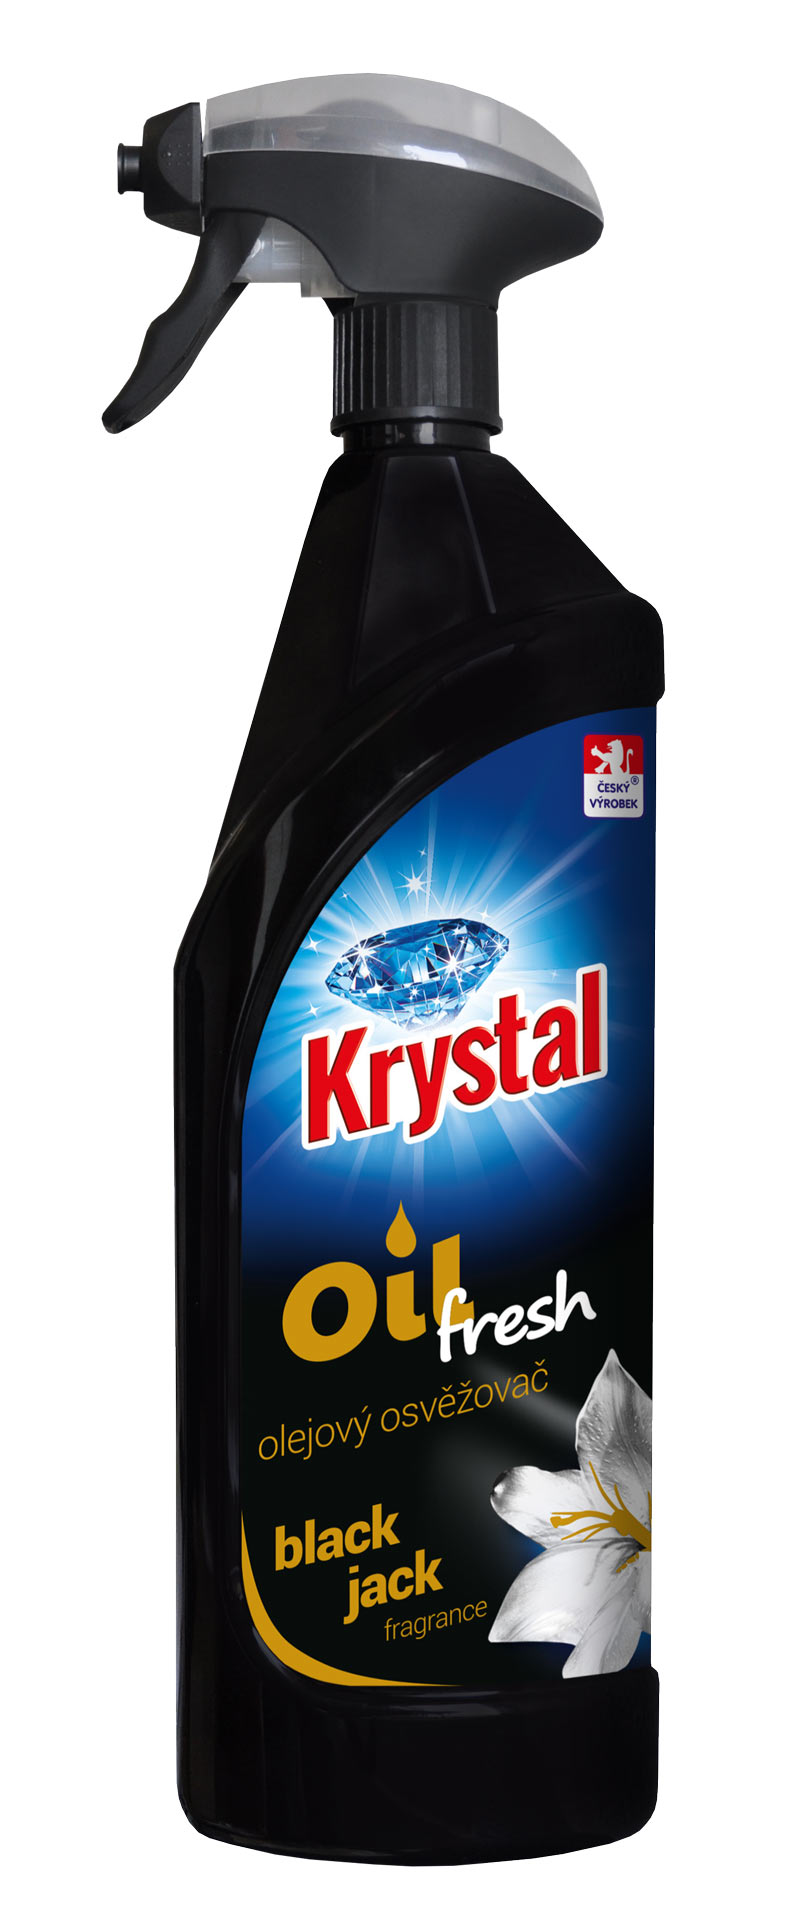 Krystal olejový osvěžovač 750 ml black jack fragrance